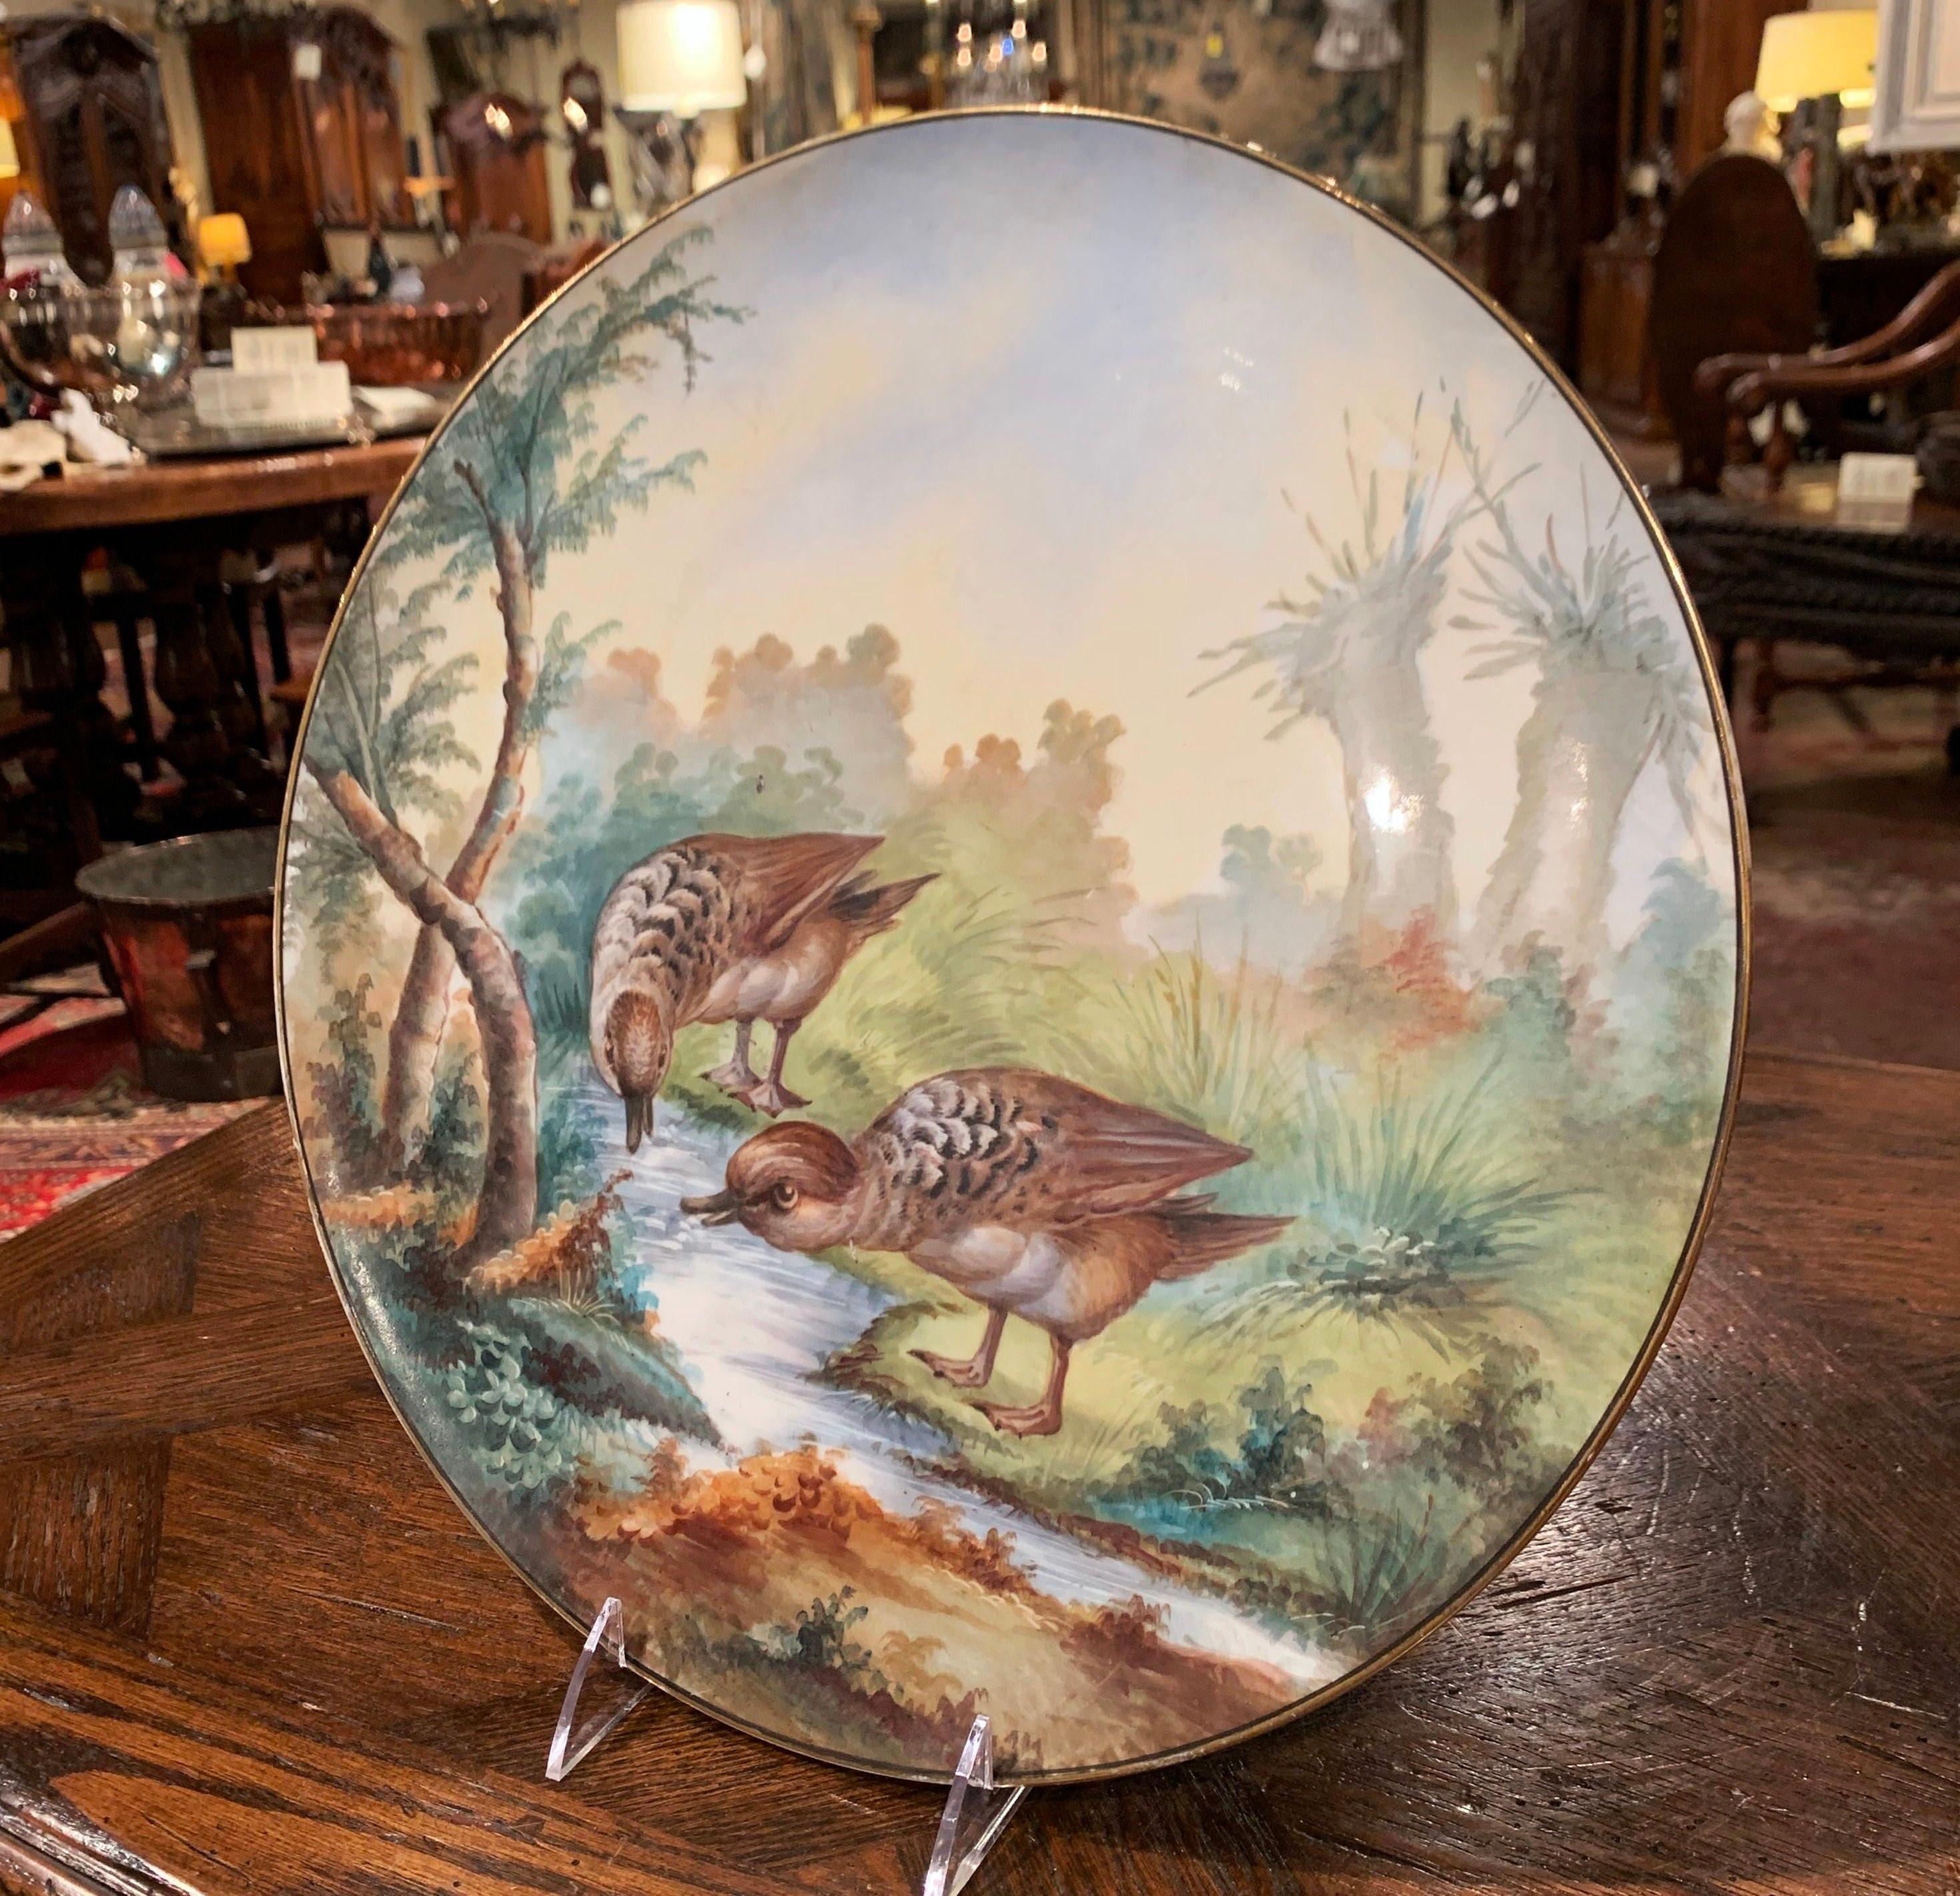 Décorez un mur ou une bibliothèque avec ce plat mural antique coloré de Limoges. Fabriquée en France vers 1809 et de forme ronde, cette assiette peinte à la main représente des oiseaux s'abreuvant dans une rivière au milieu d'un paysage luxuriant.